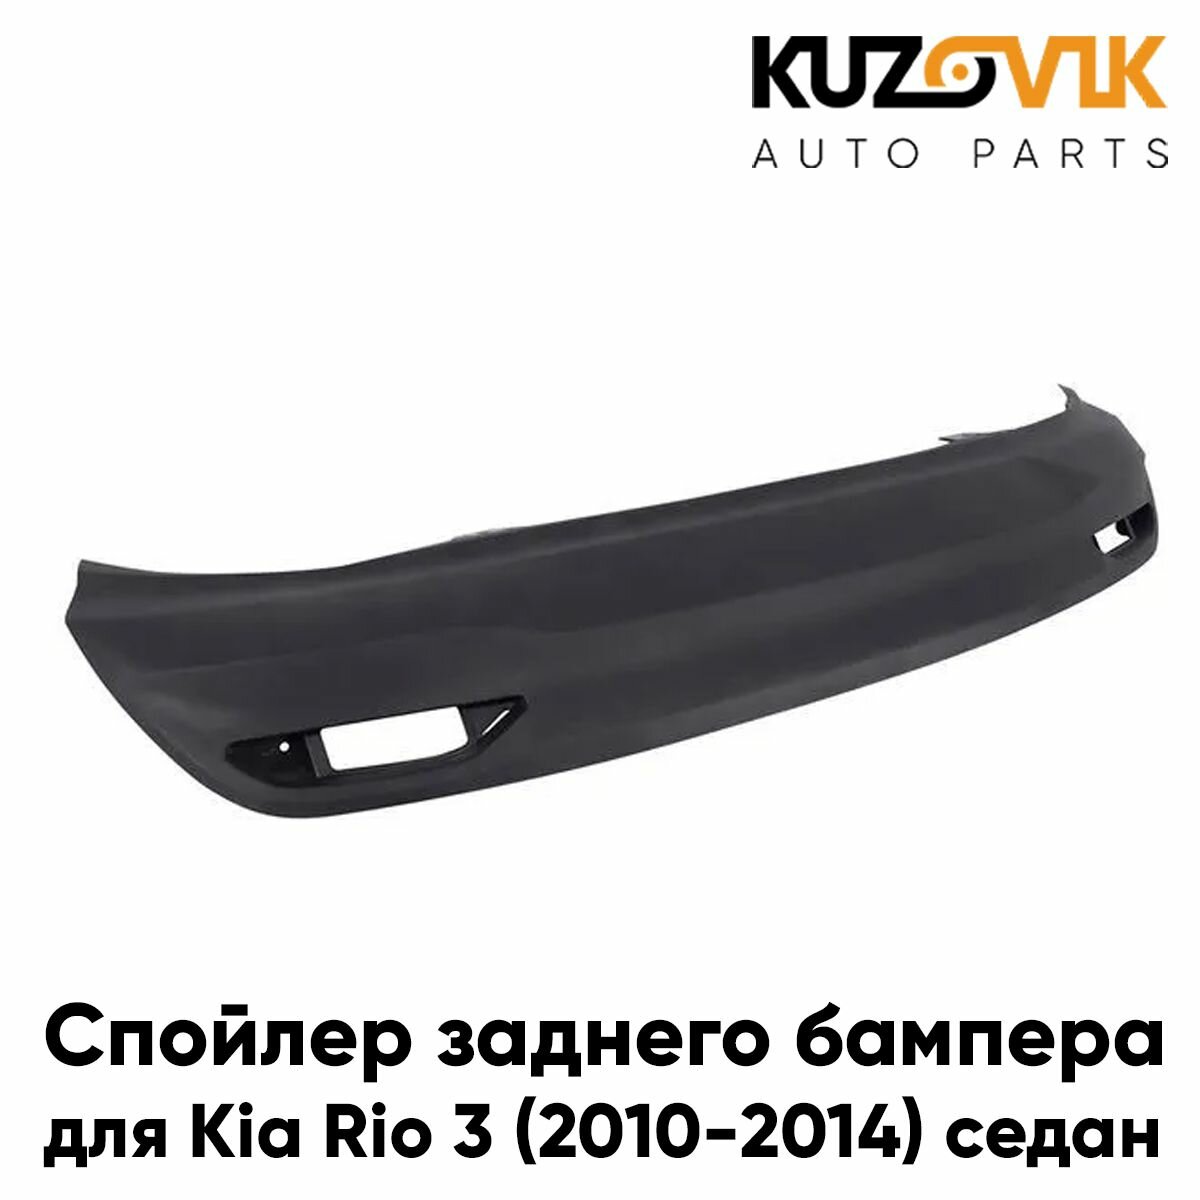 Губа, накладка, спойлер заднего бампера для Киа Рио Kia Rio 3 (2010-2014) седан нижняя защита